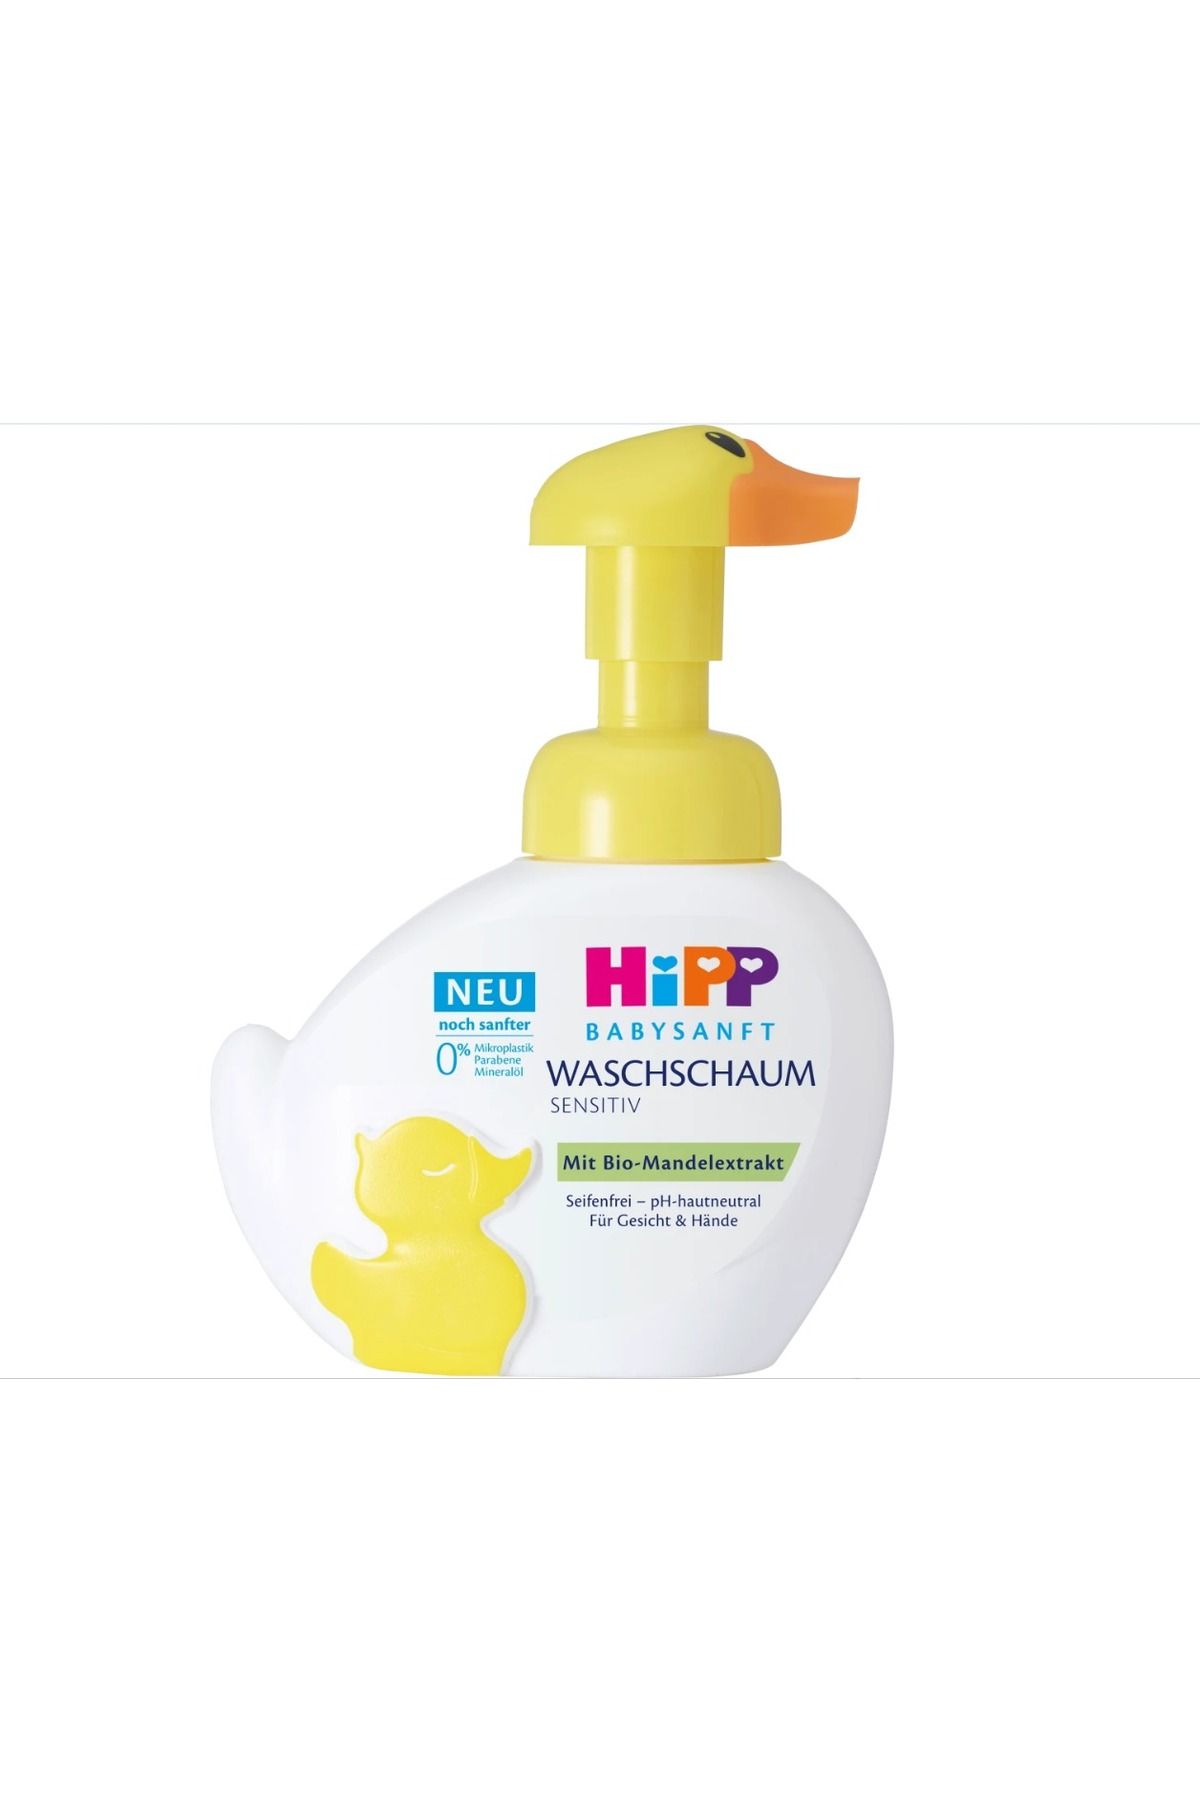 QUEEN AKSESUAR alman kalitesi 1 numara hipp parabensiz bebek çocuk köpük sabun yüz el için yumuşatıcı ördek şişe